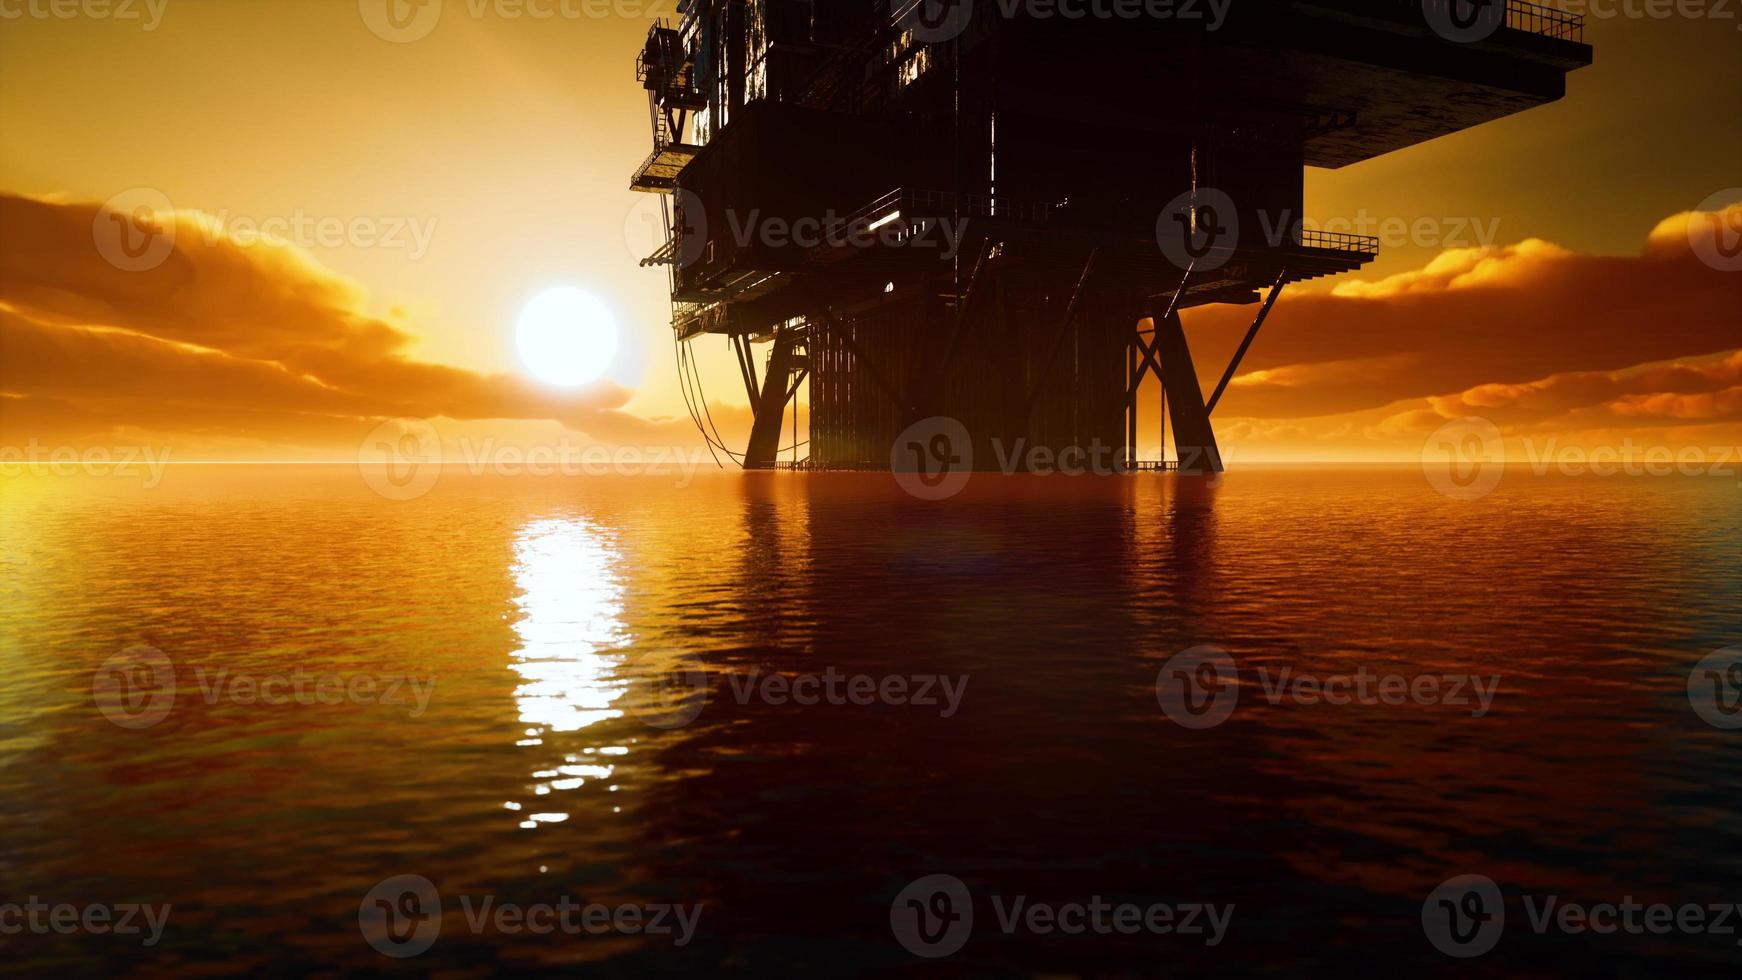 silueta de la plataforma de perforación de petróleo en alta mar foto